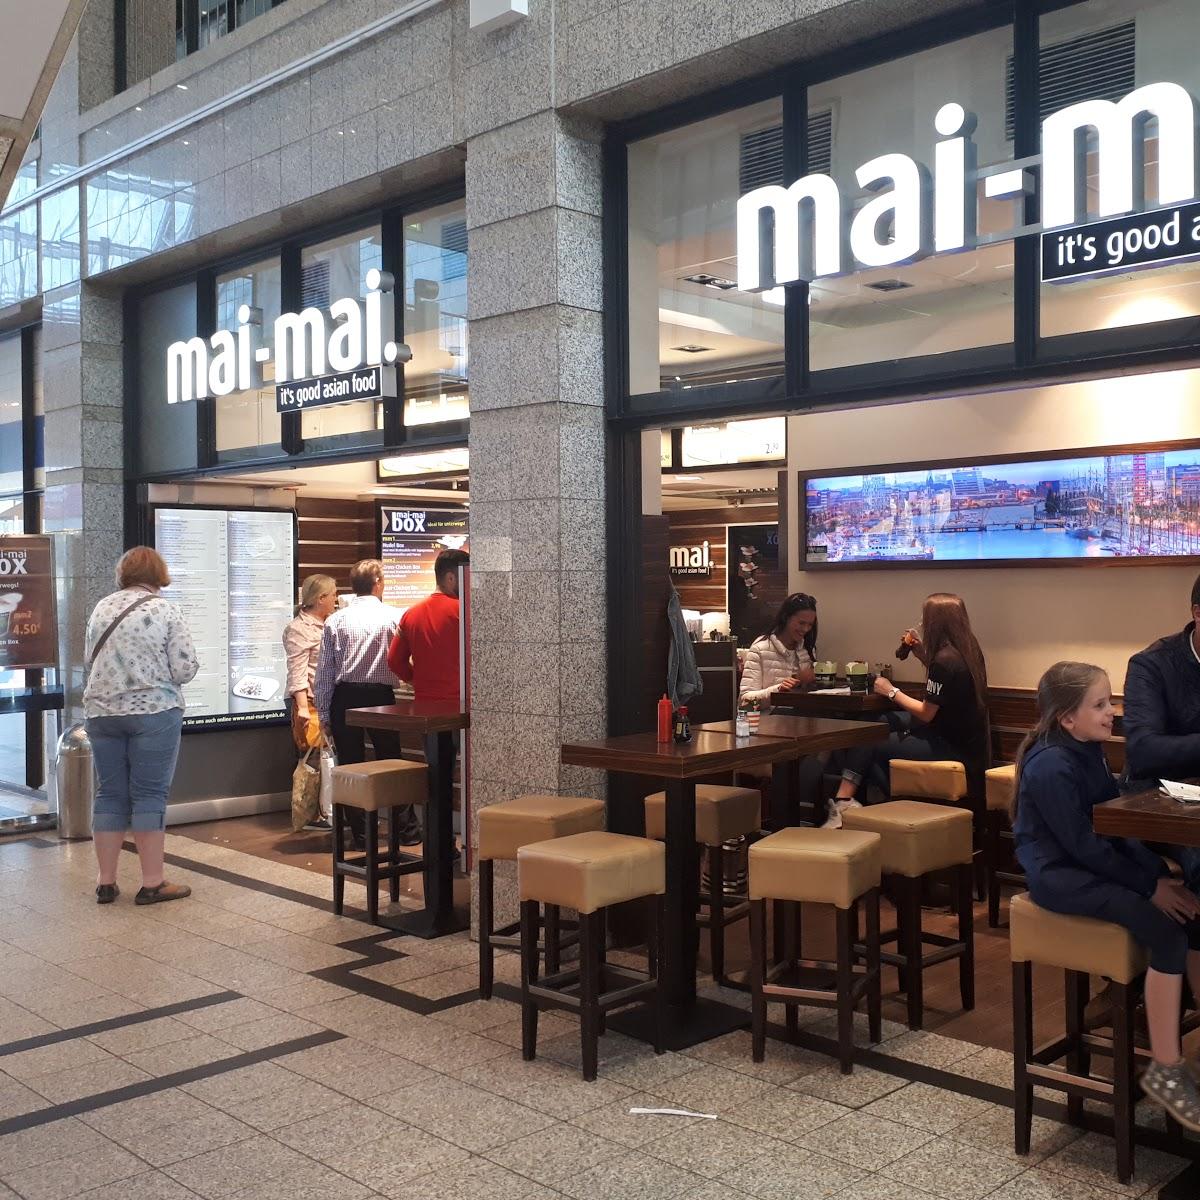 Restaurant "Mai Mai" in Kiel